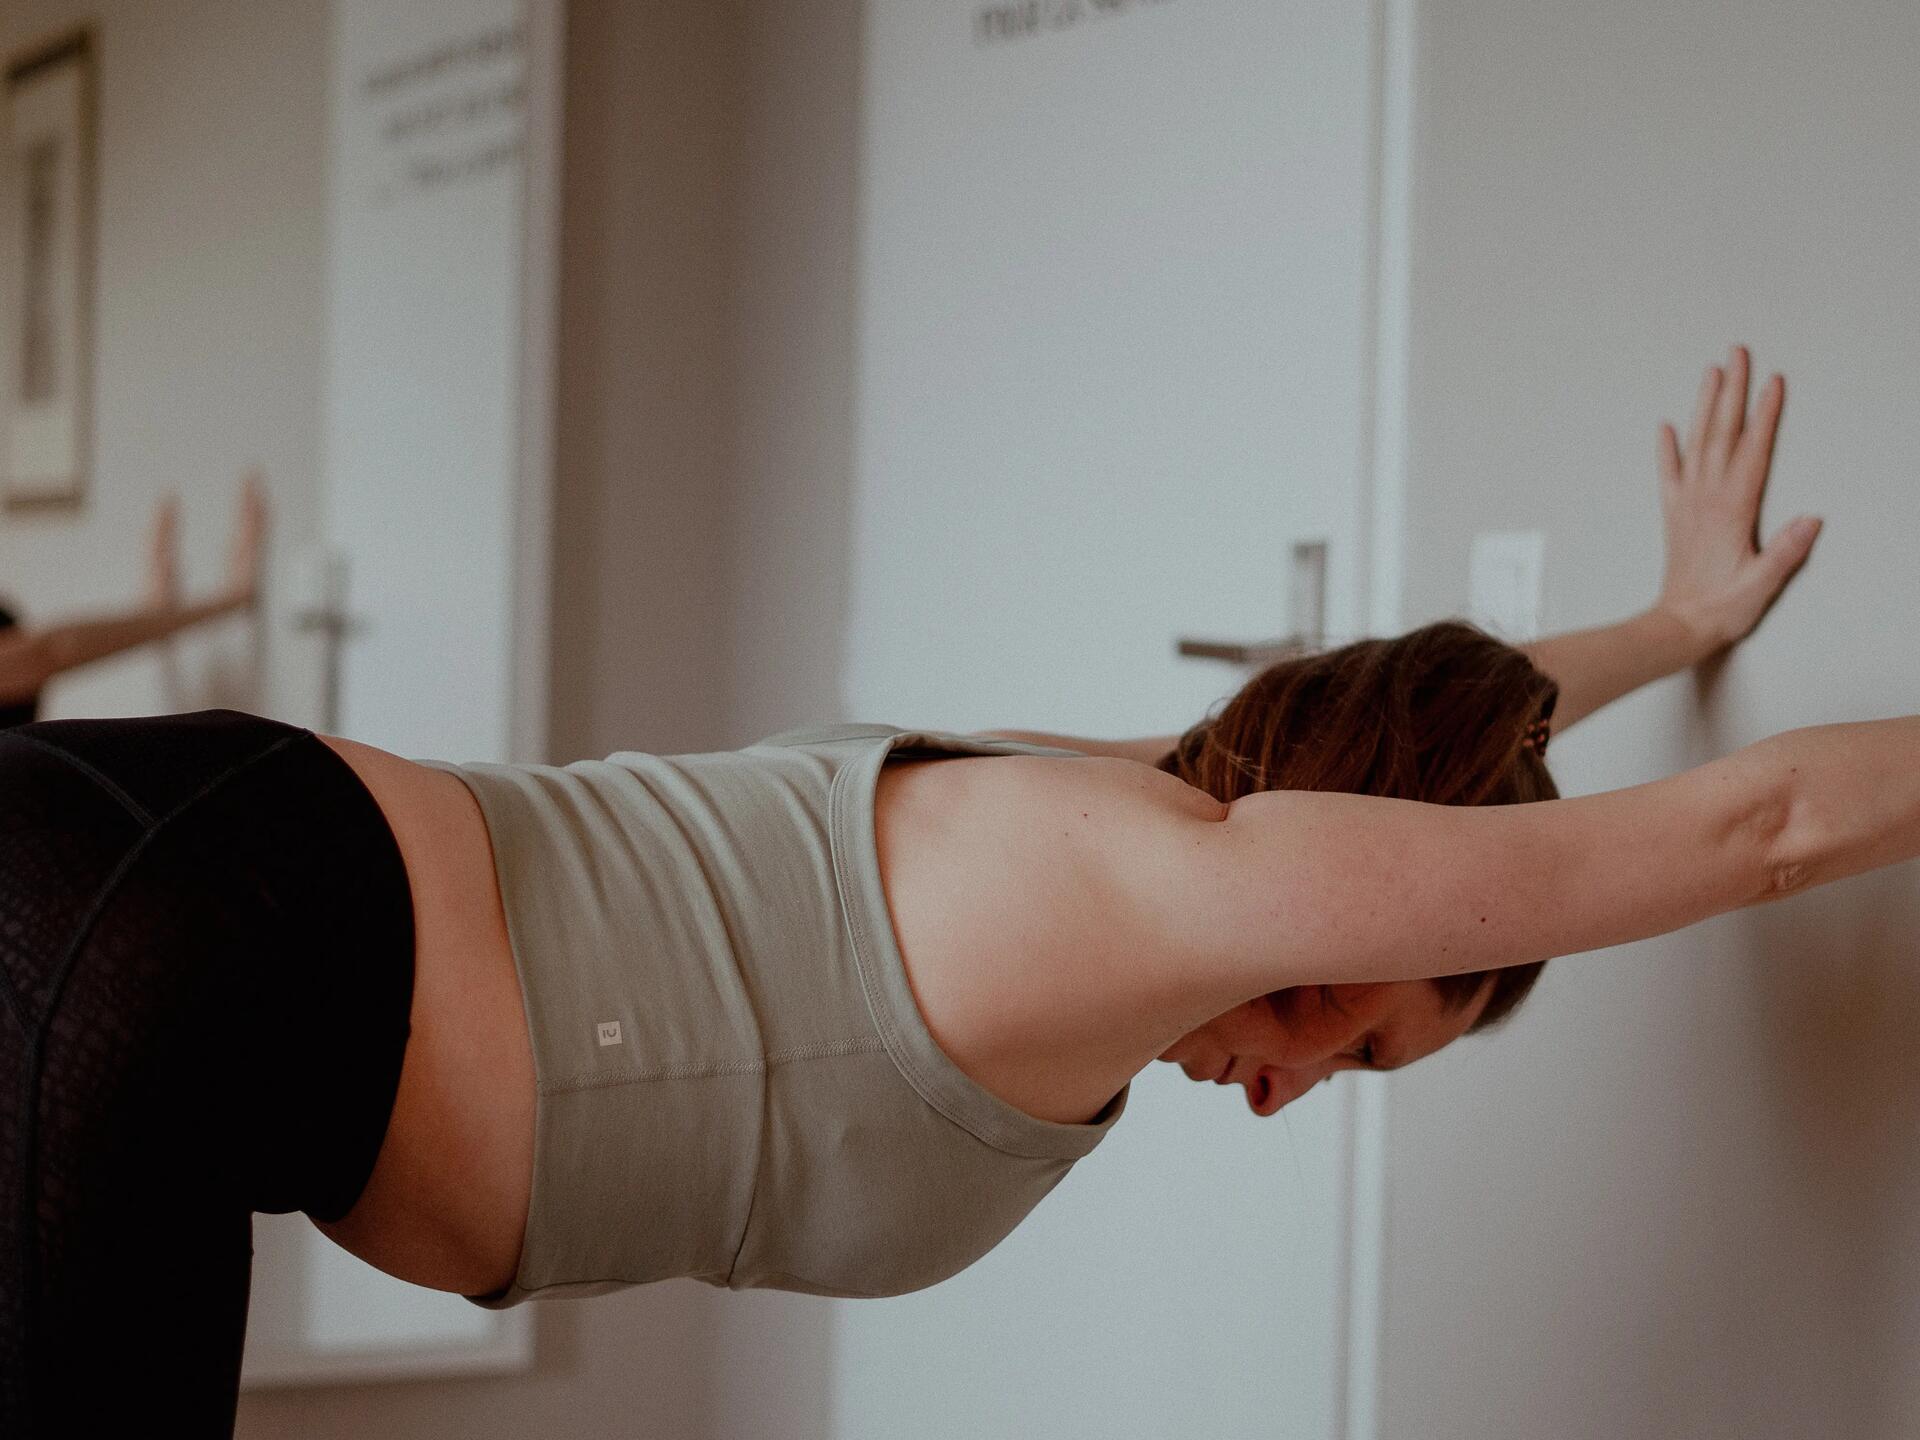 Pilates au mur : 7 exercices simples et efficaces pour débuter